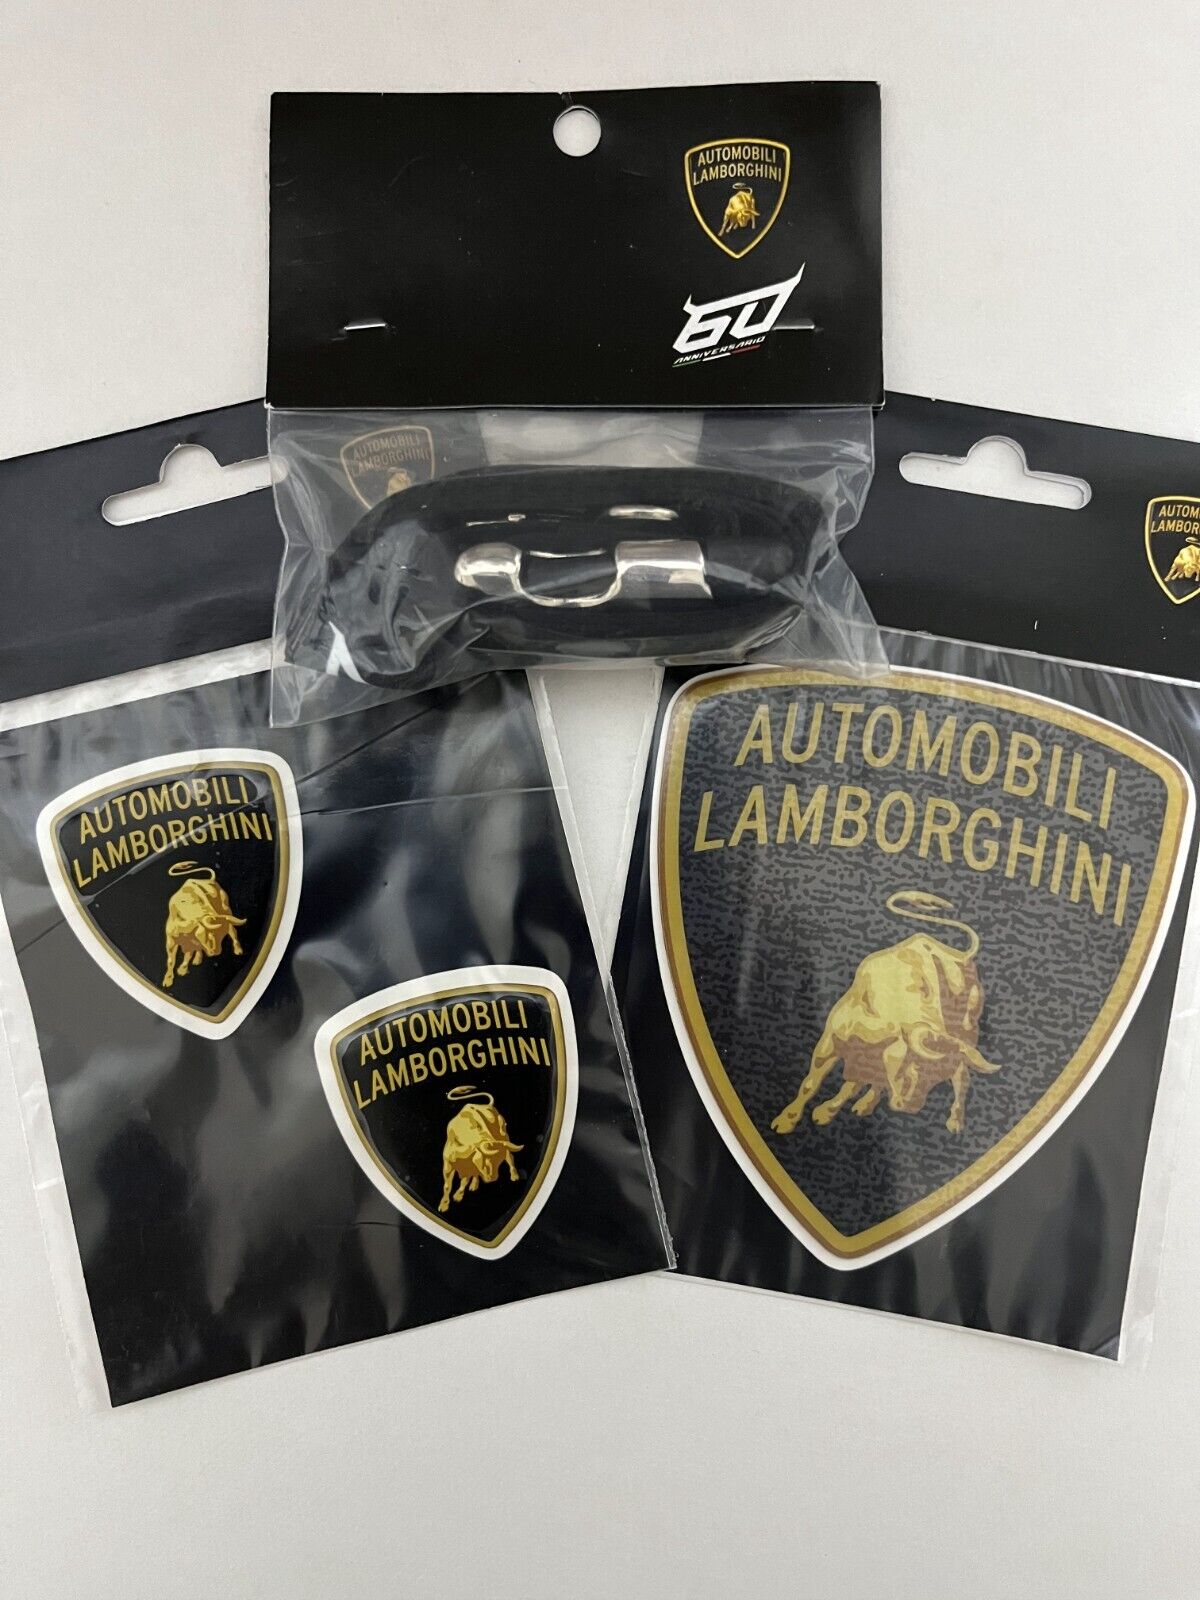 Automobili Lamborghini Strap 60th Anniversary Lanyards and Sticker set Genuine